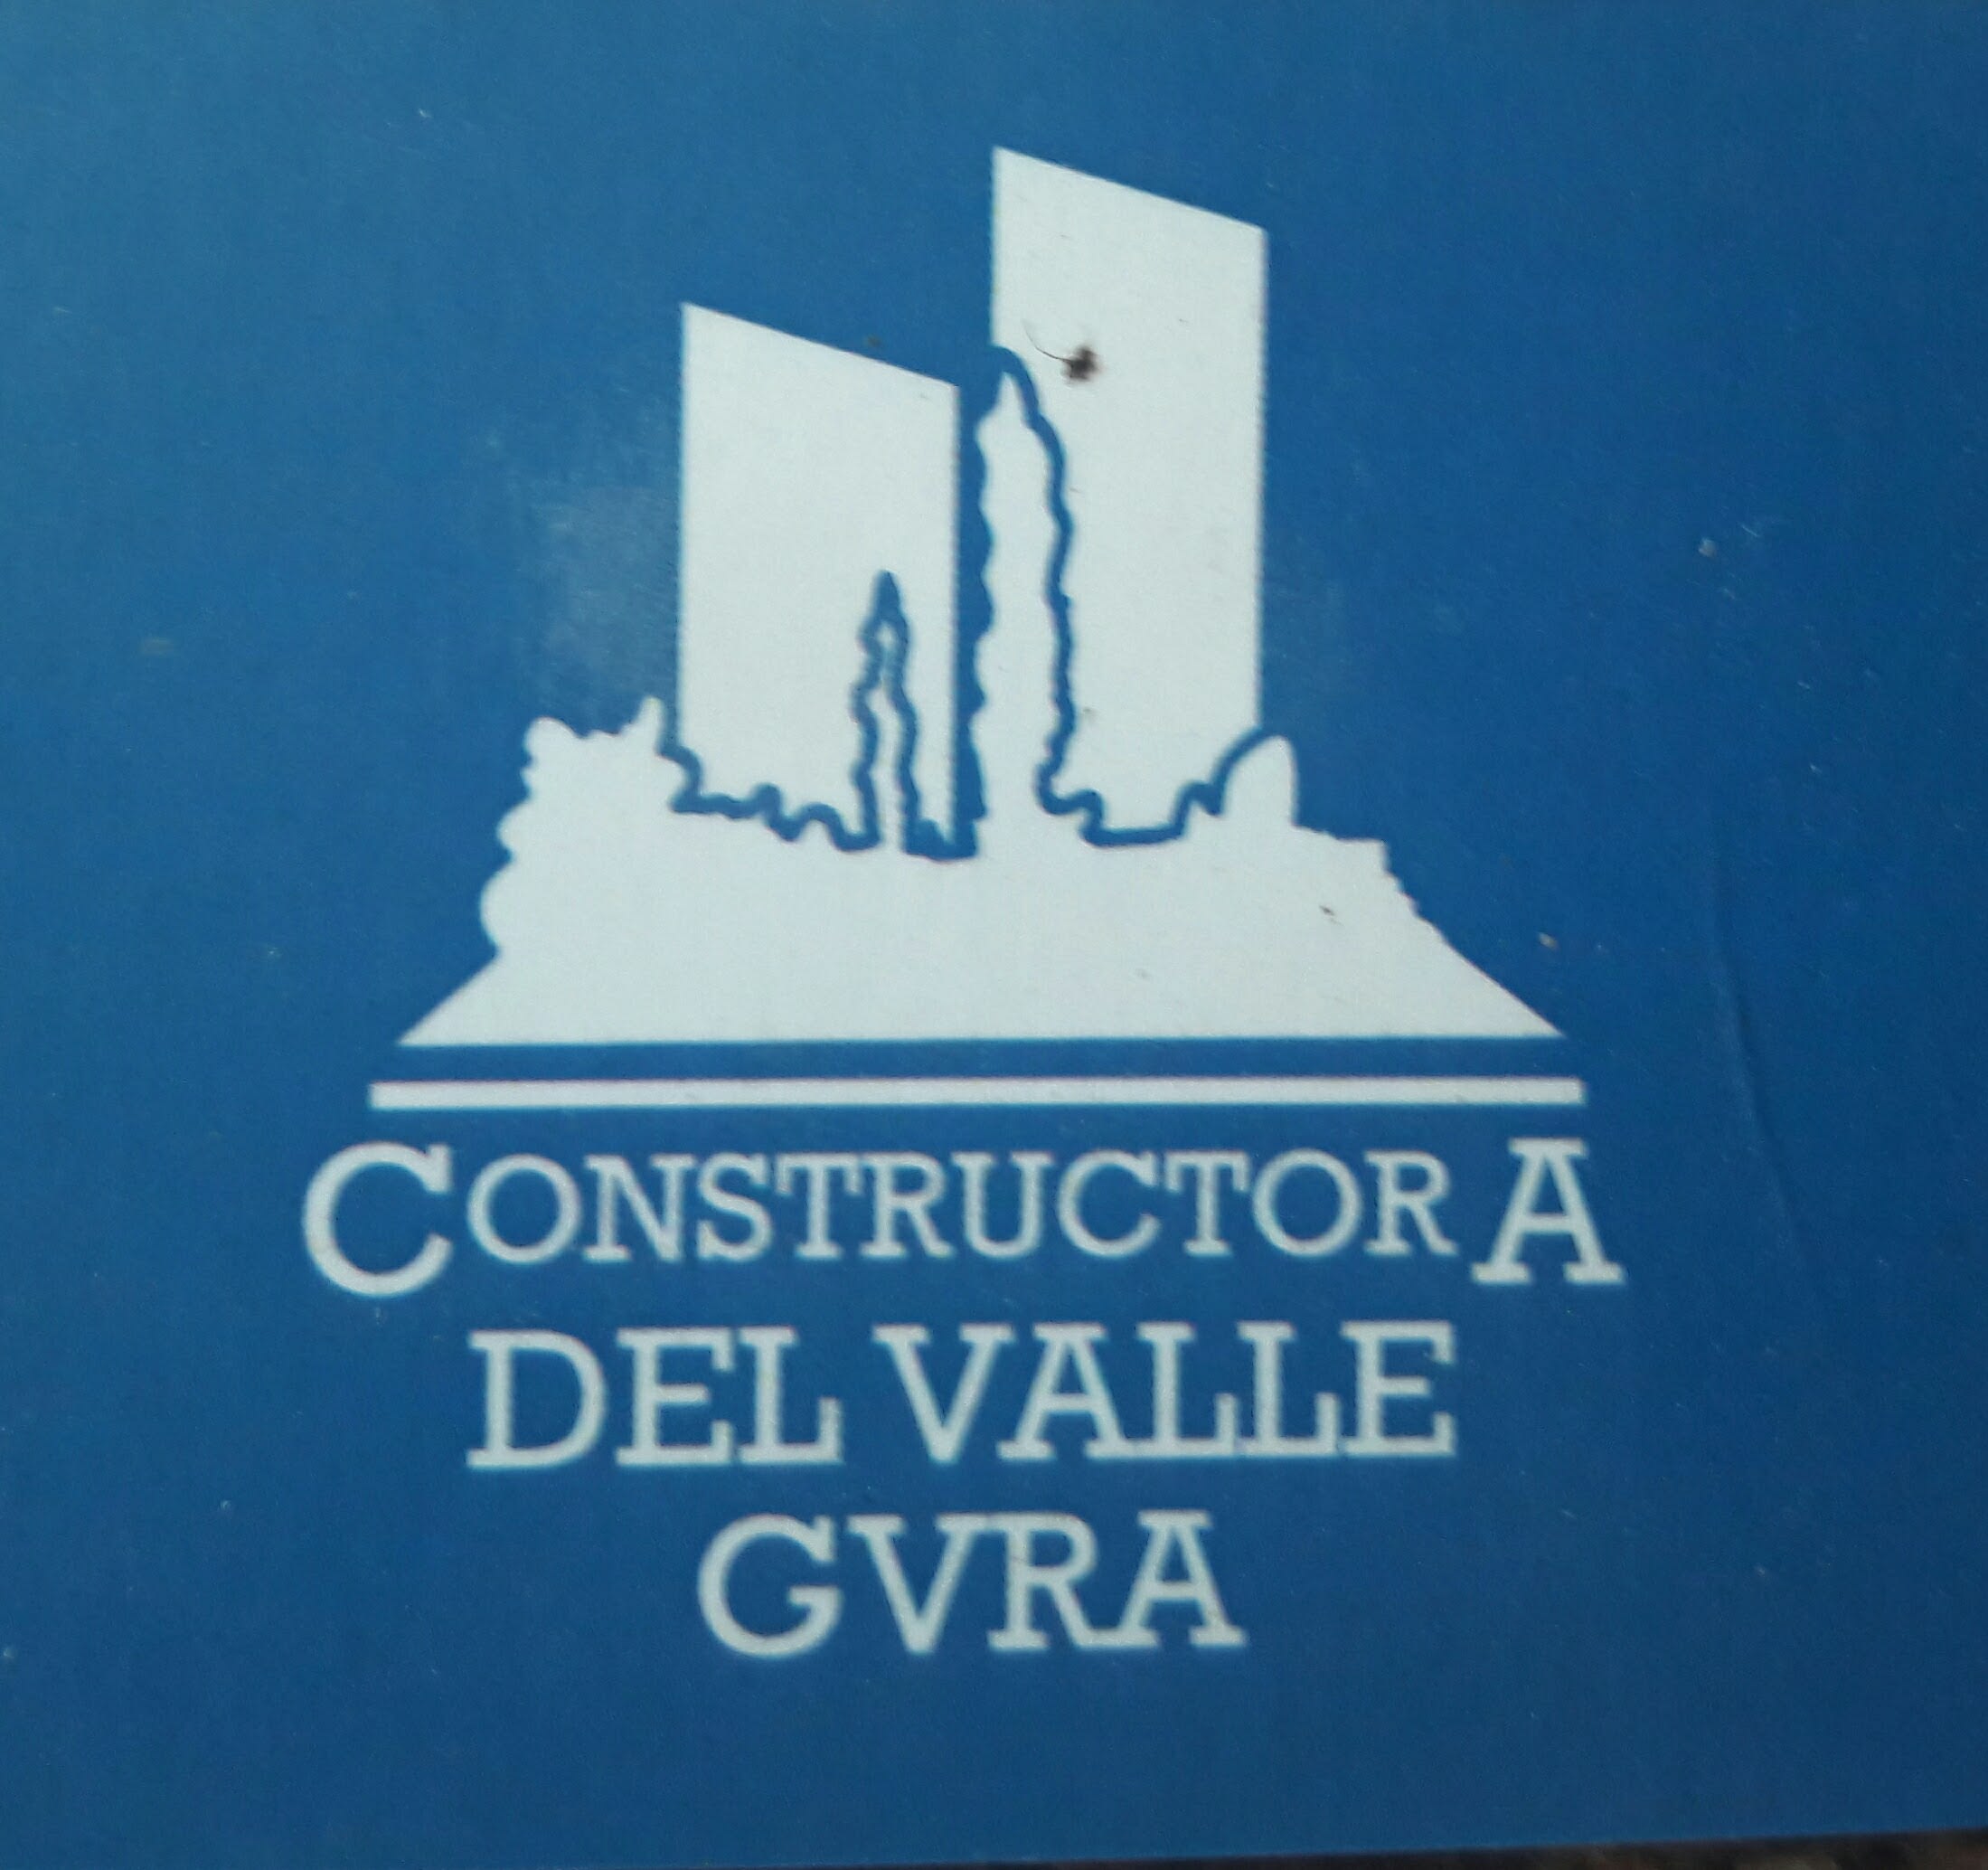 Constructora Del Valle Grva